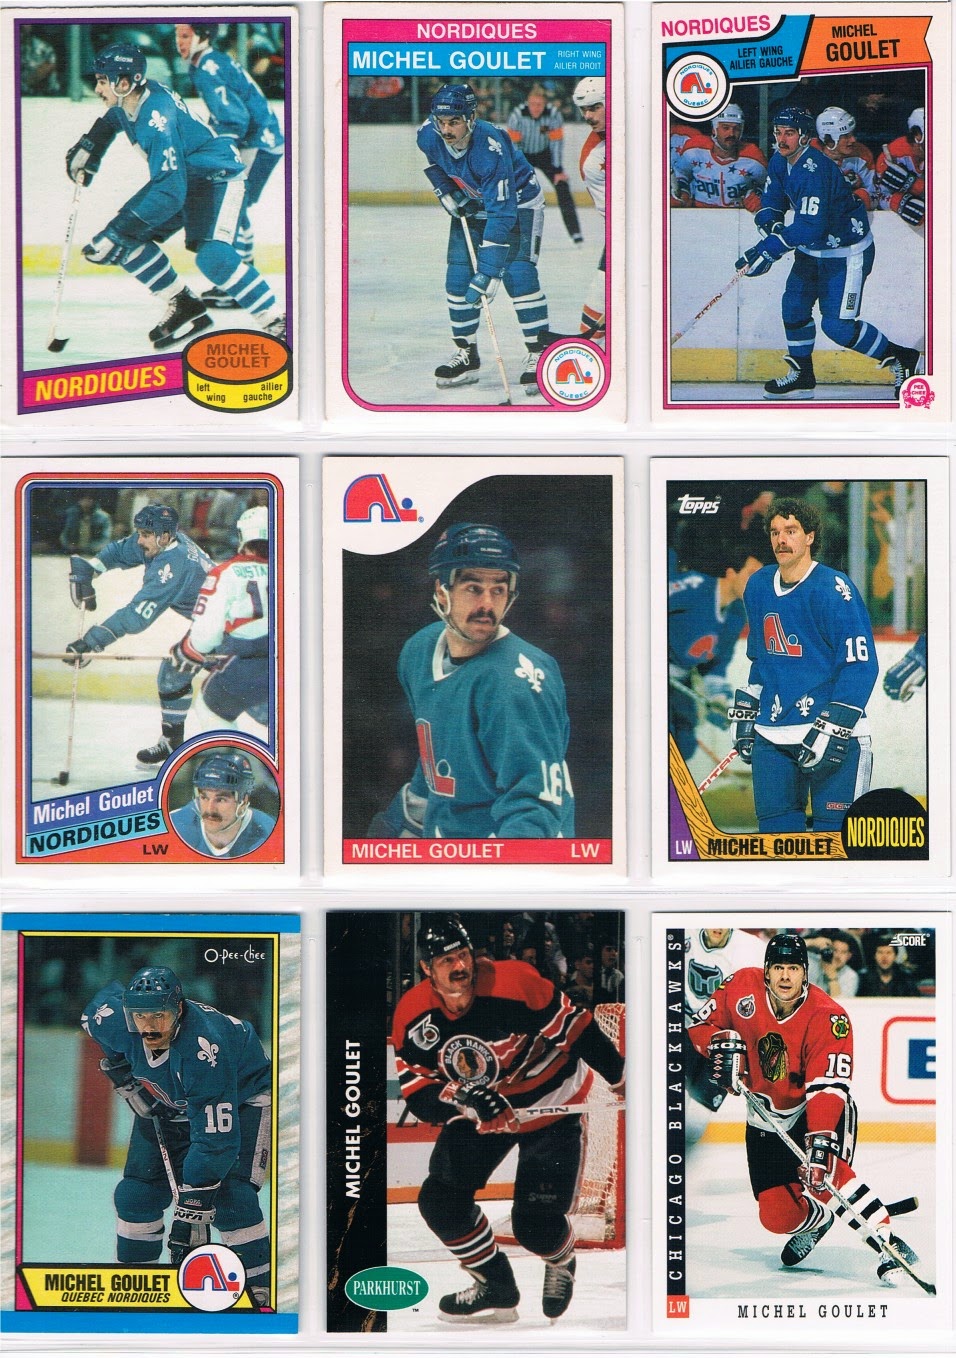 Nordiques vs Canadiens, Guy Lafleur scores twice (1981-82) 